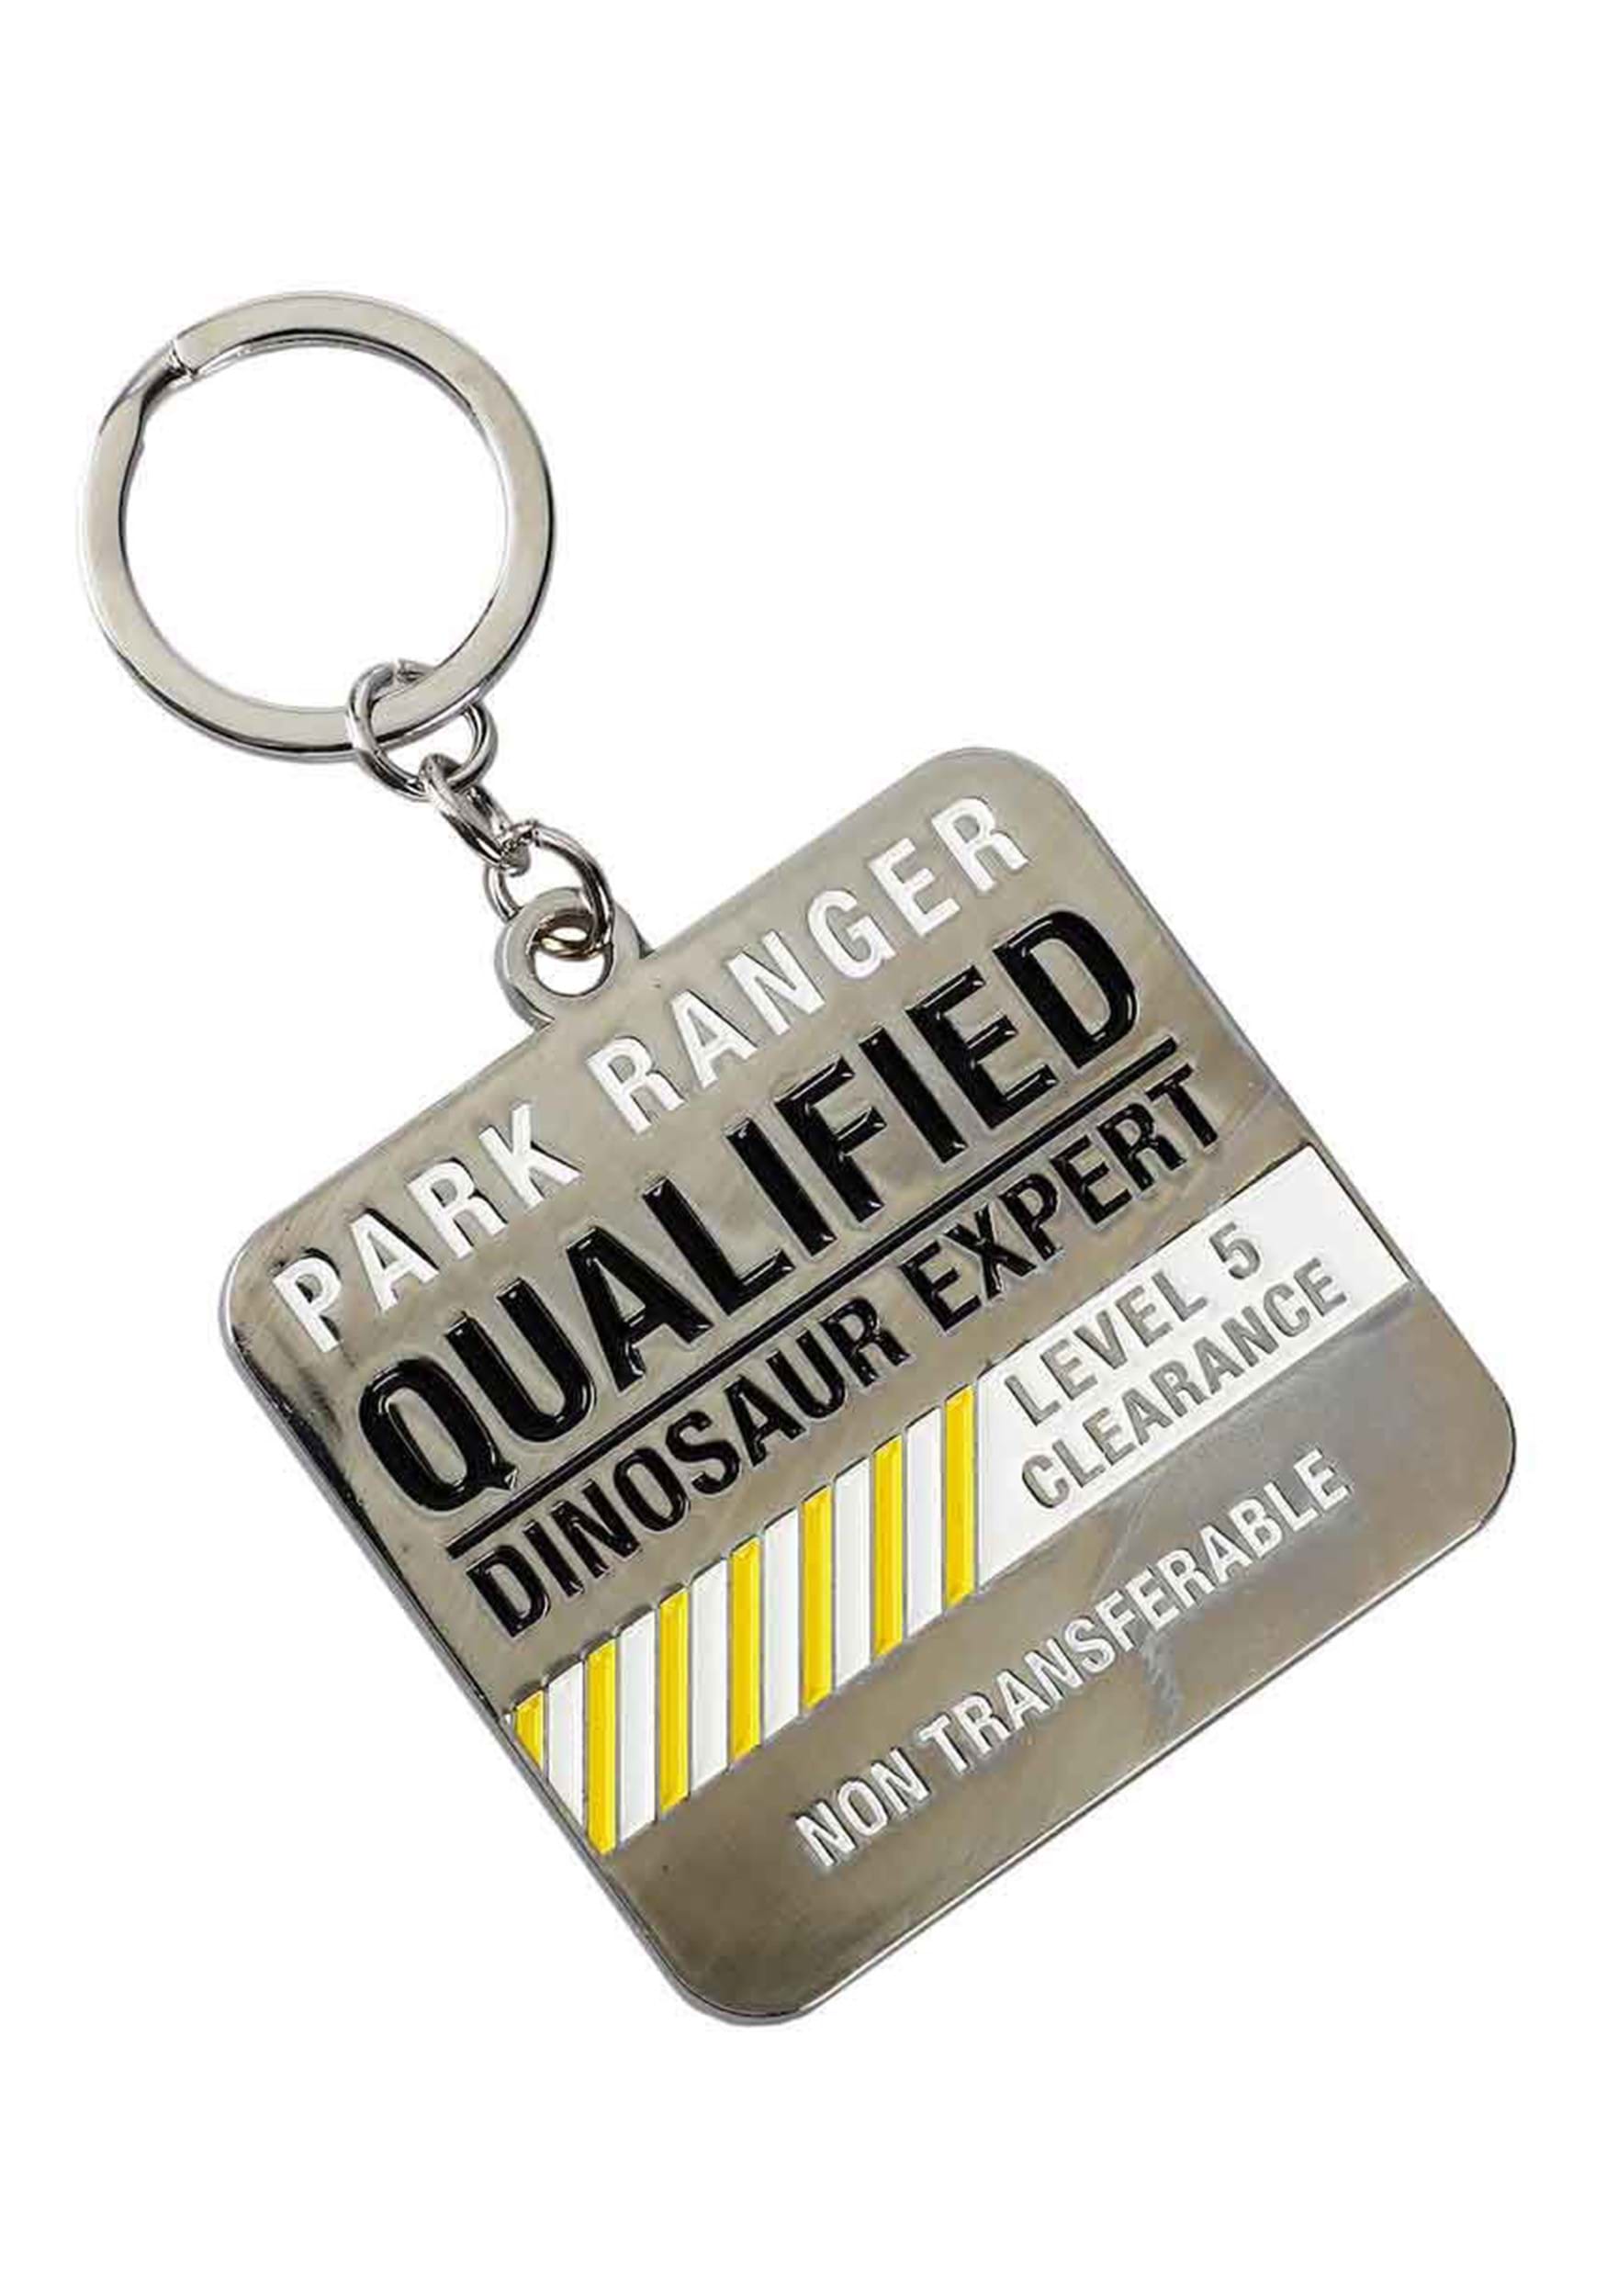 Jurassic Park Qualified Ranger Keychain